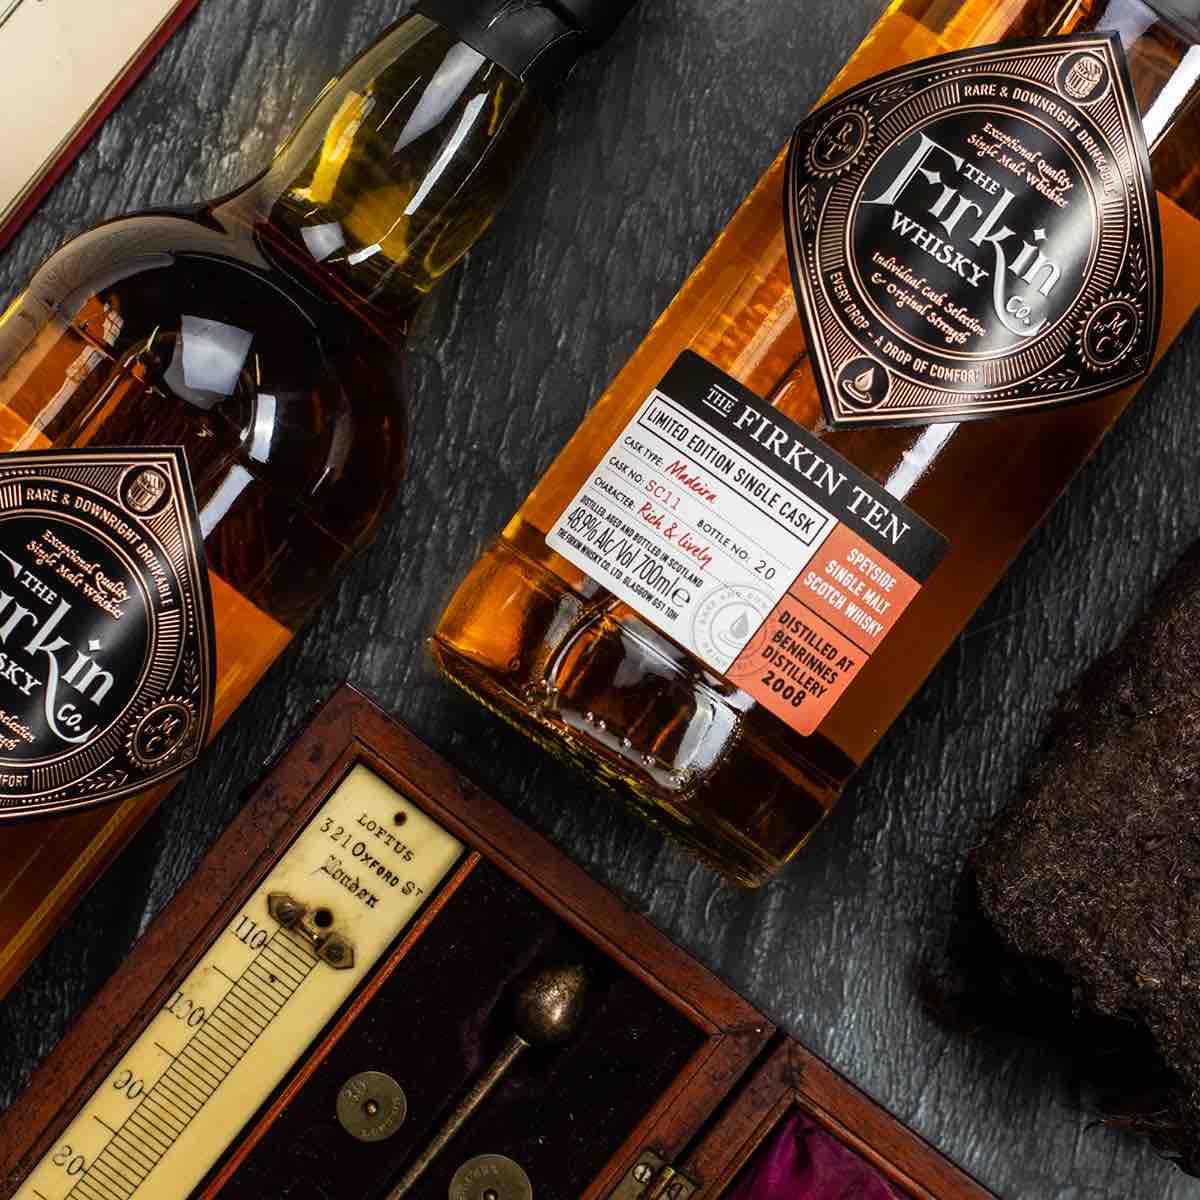 Firkin Whisky Company: Awesome Single Malt Scotch